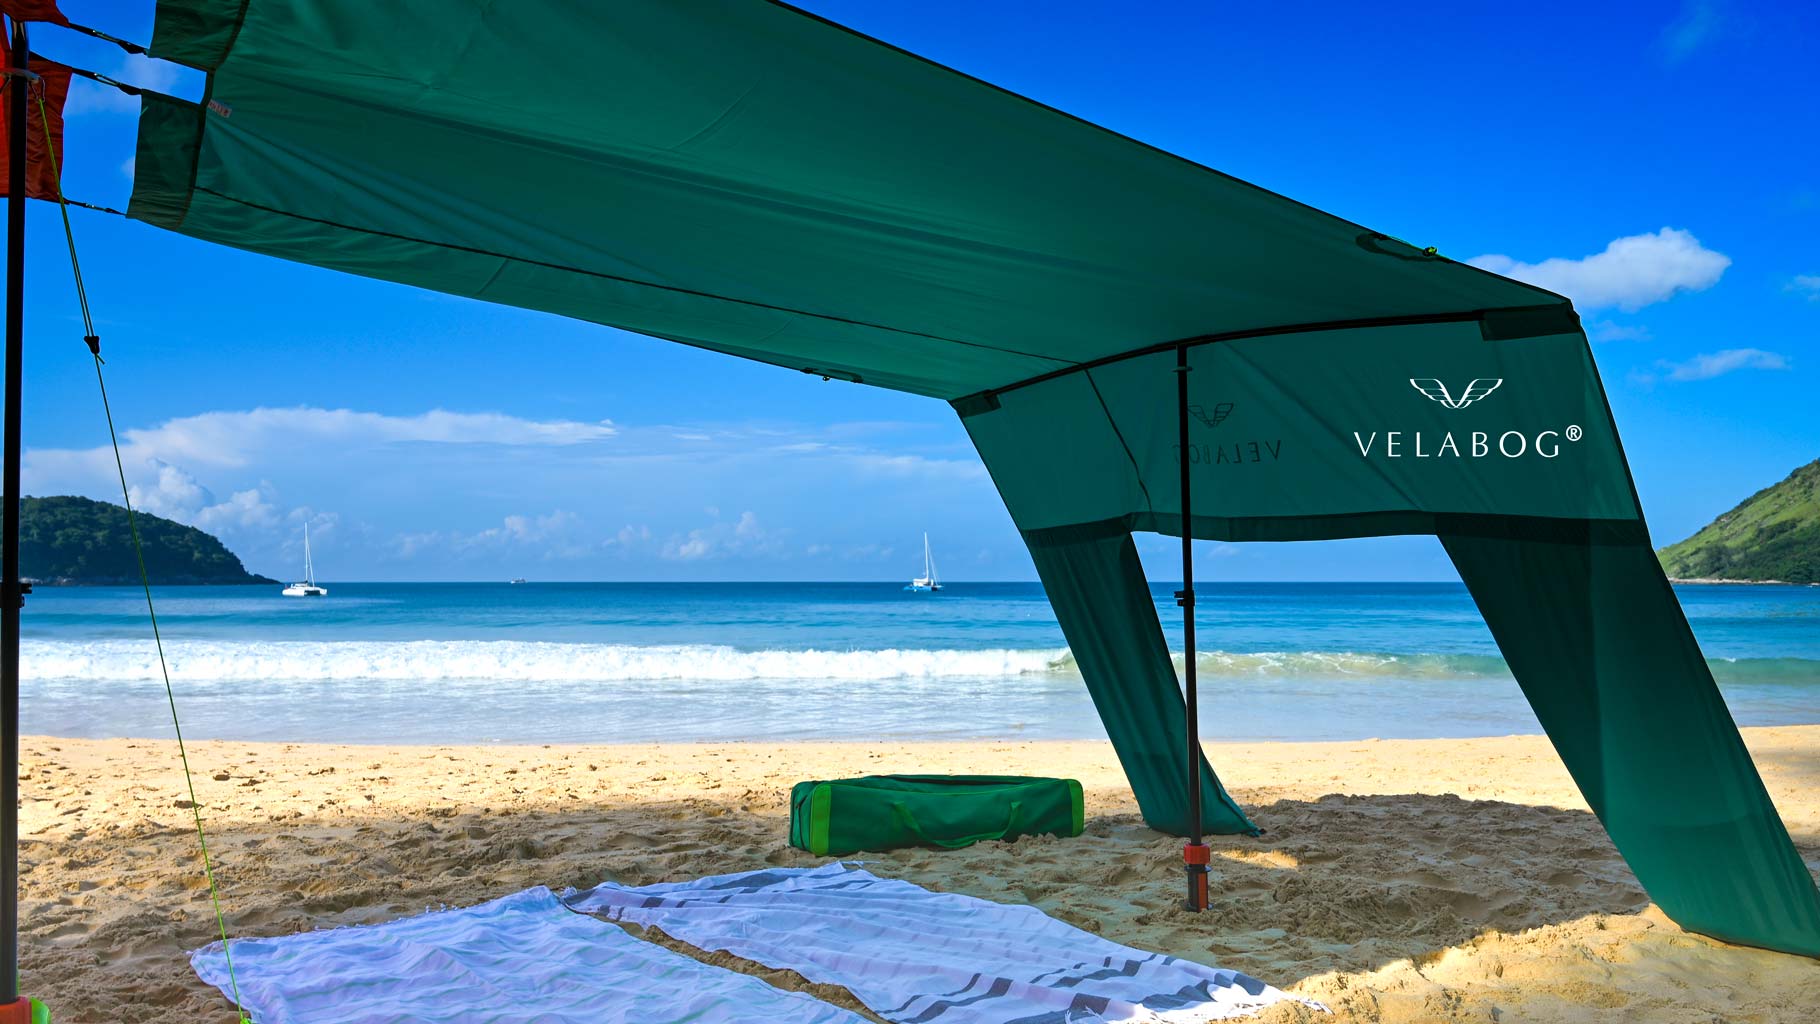 Voile d’ombrage tente plage Velabog Breeze vert relié à un deuxième voile d’ombrage sur la plage. Combinaison réalisée grâce au kit d’extension pour former une énorme tente de plage offrant beaucoup d’ombre pour toute la famille et les amis.